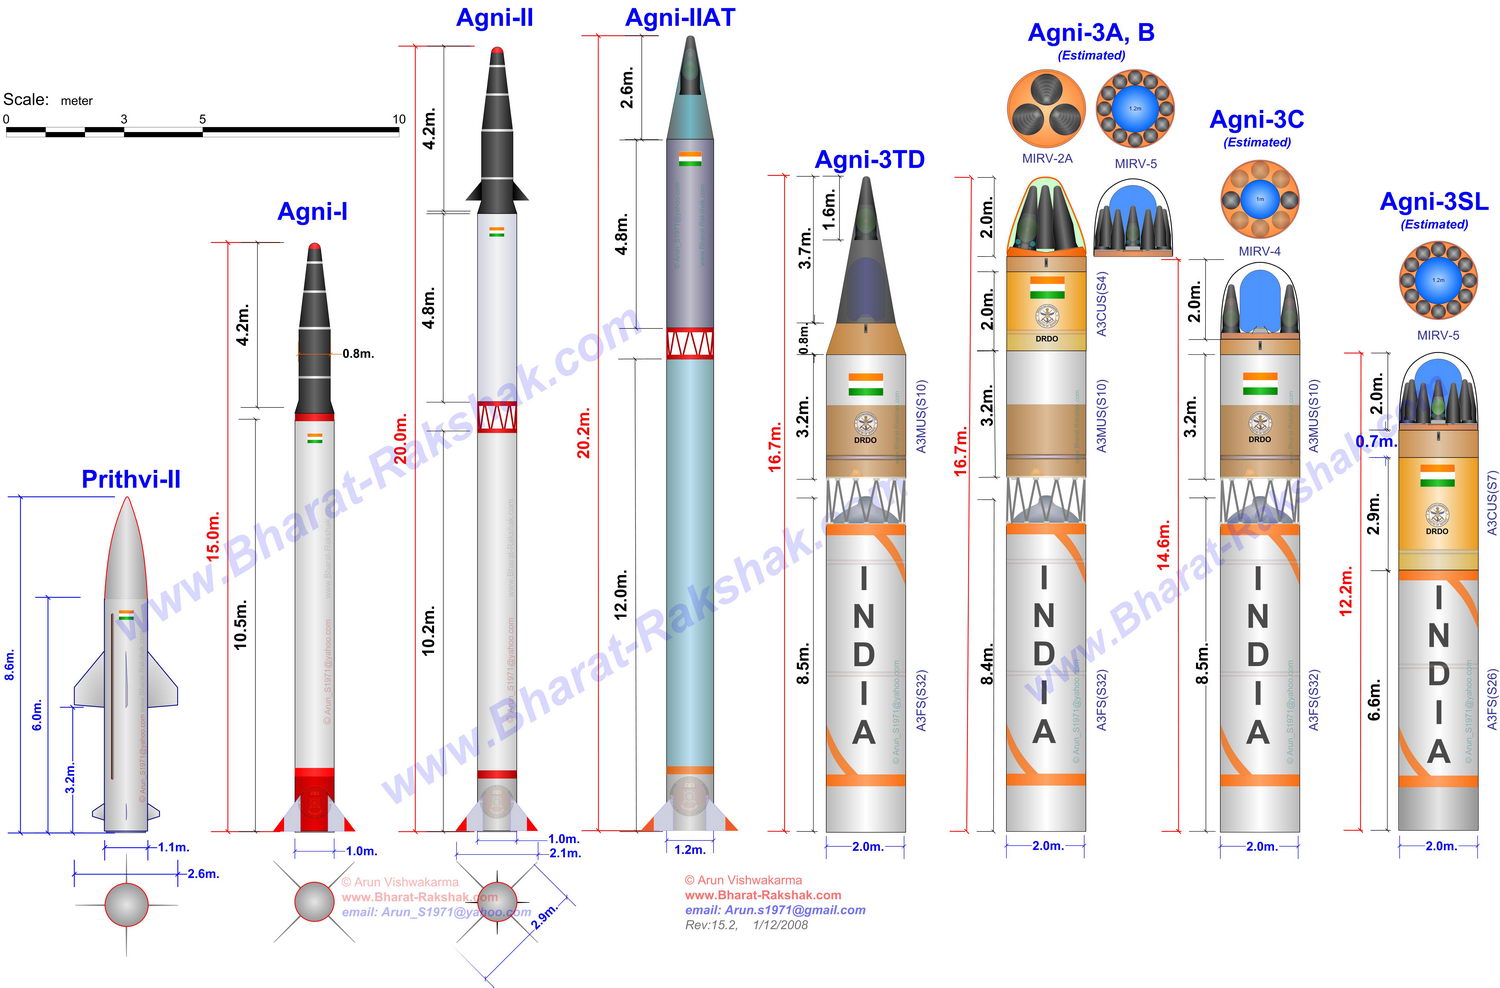 الهند تختبر صاروخ بالستي نووي 2012.12.12 Prithvi+%2526+Agni+2%252C3%252CSL+r15c-1500pixle